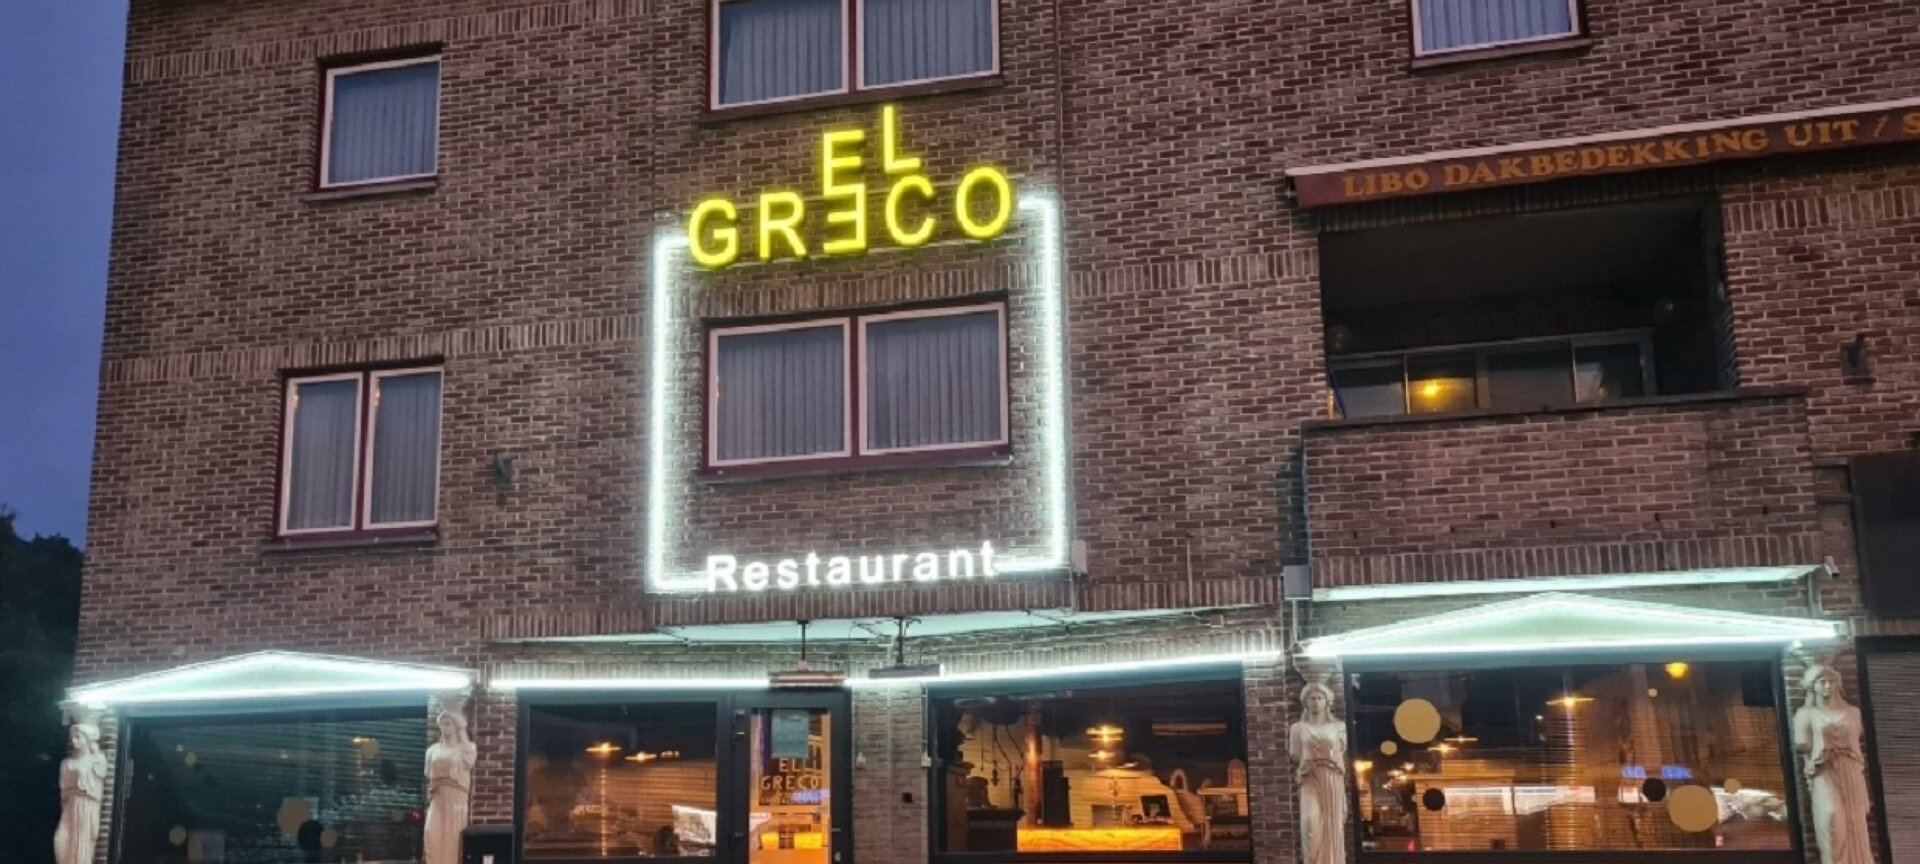 Restaurant El Greco - exterieur